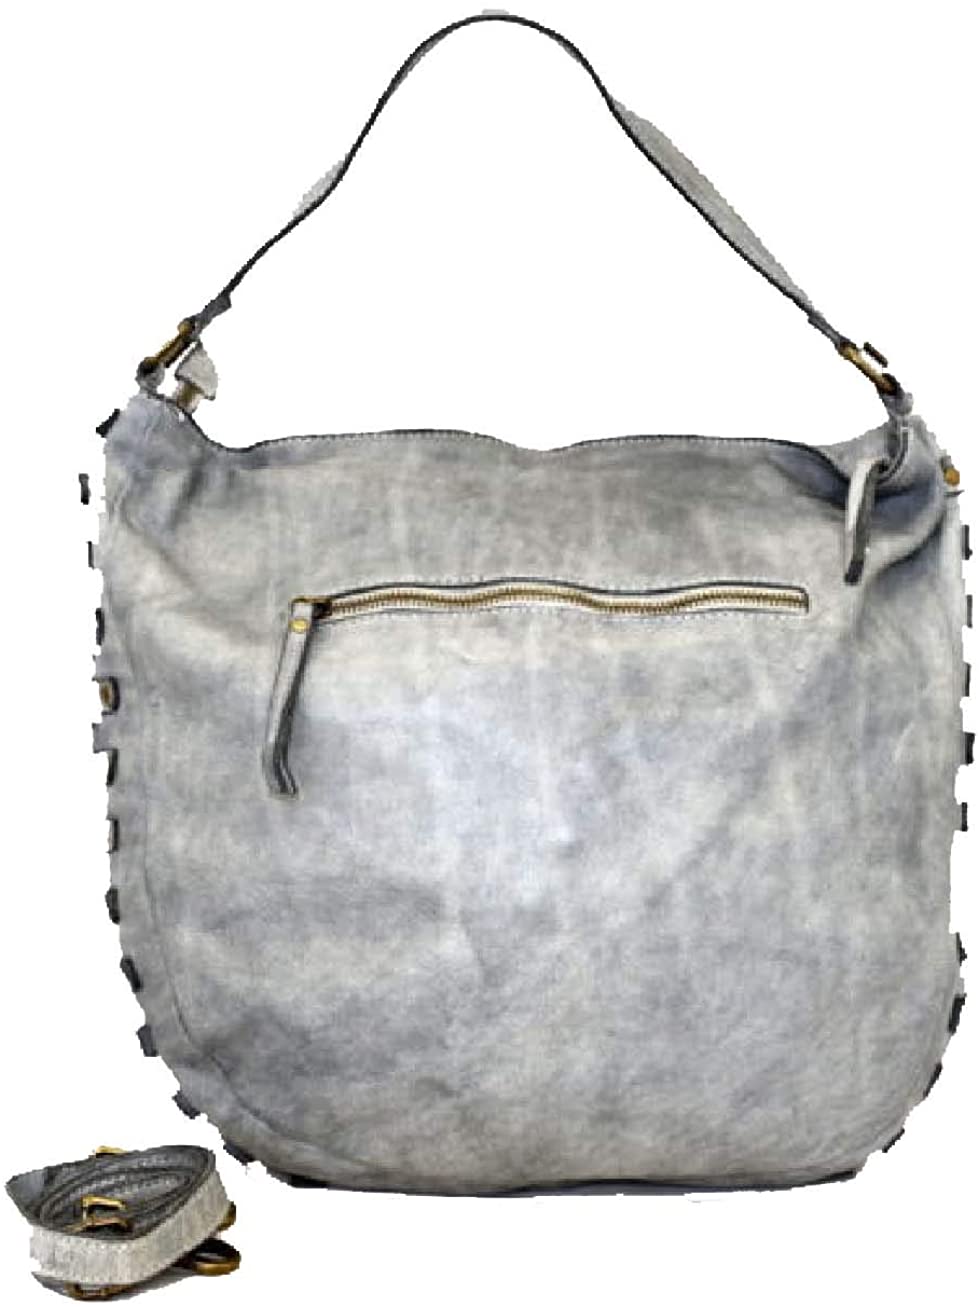 BZNA Bag Samanta gelb Italy Designer Damen Handtasche Schultertasche Tasche Leder Shopper Neu